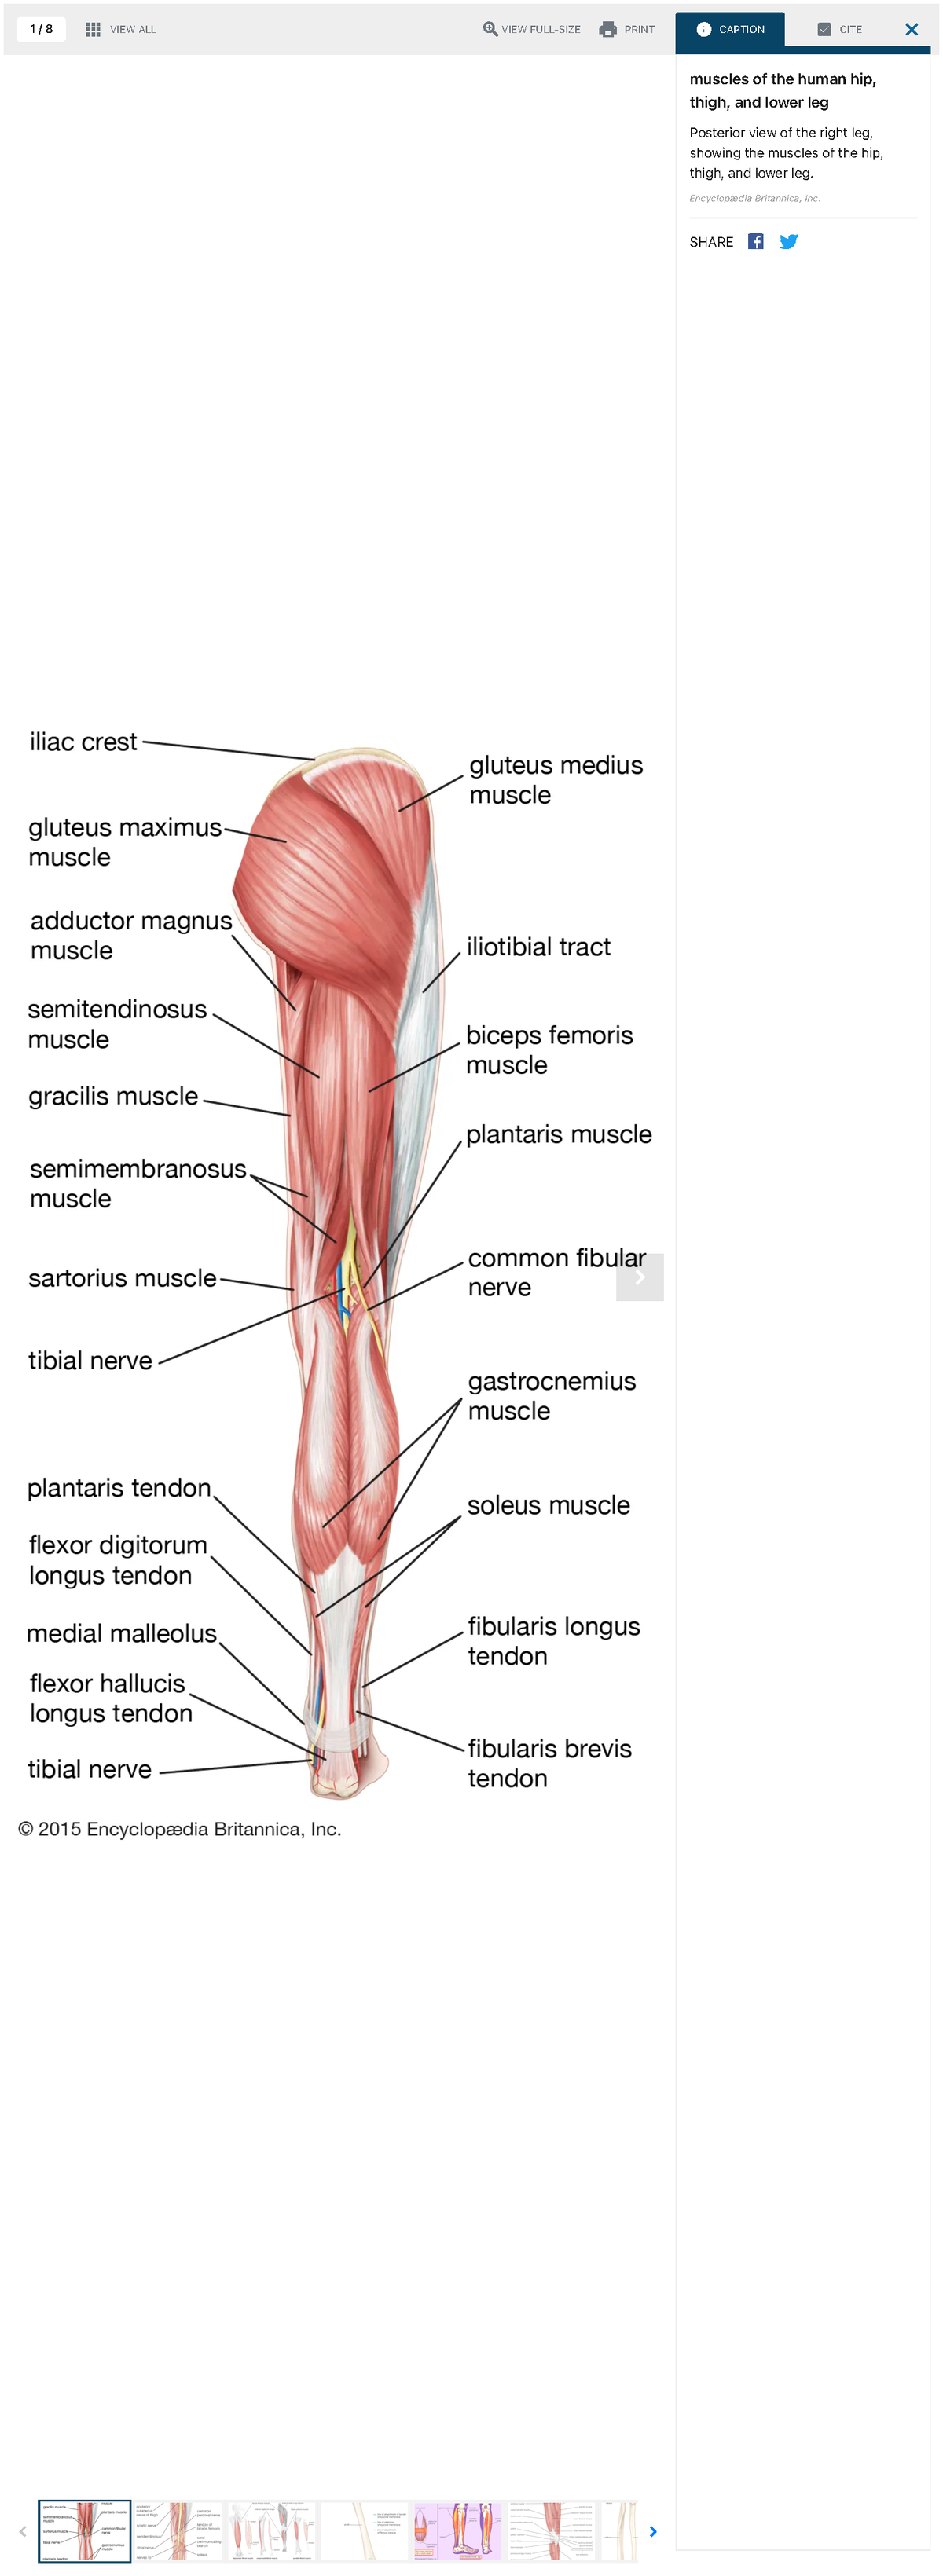 Leg, Definition, Bones, Muscles, & Facts